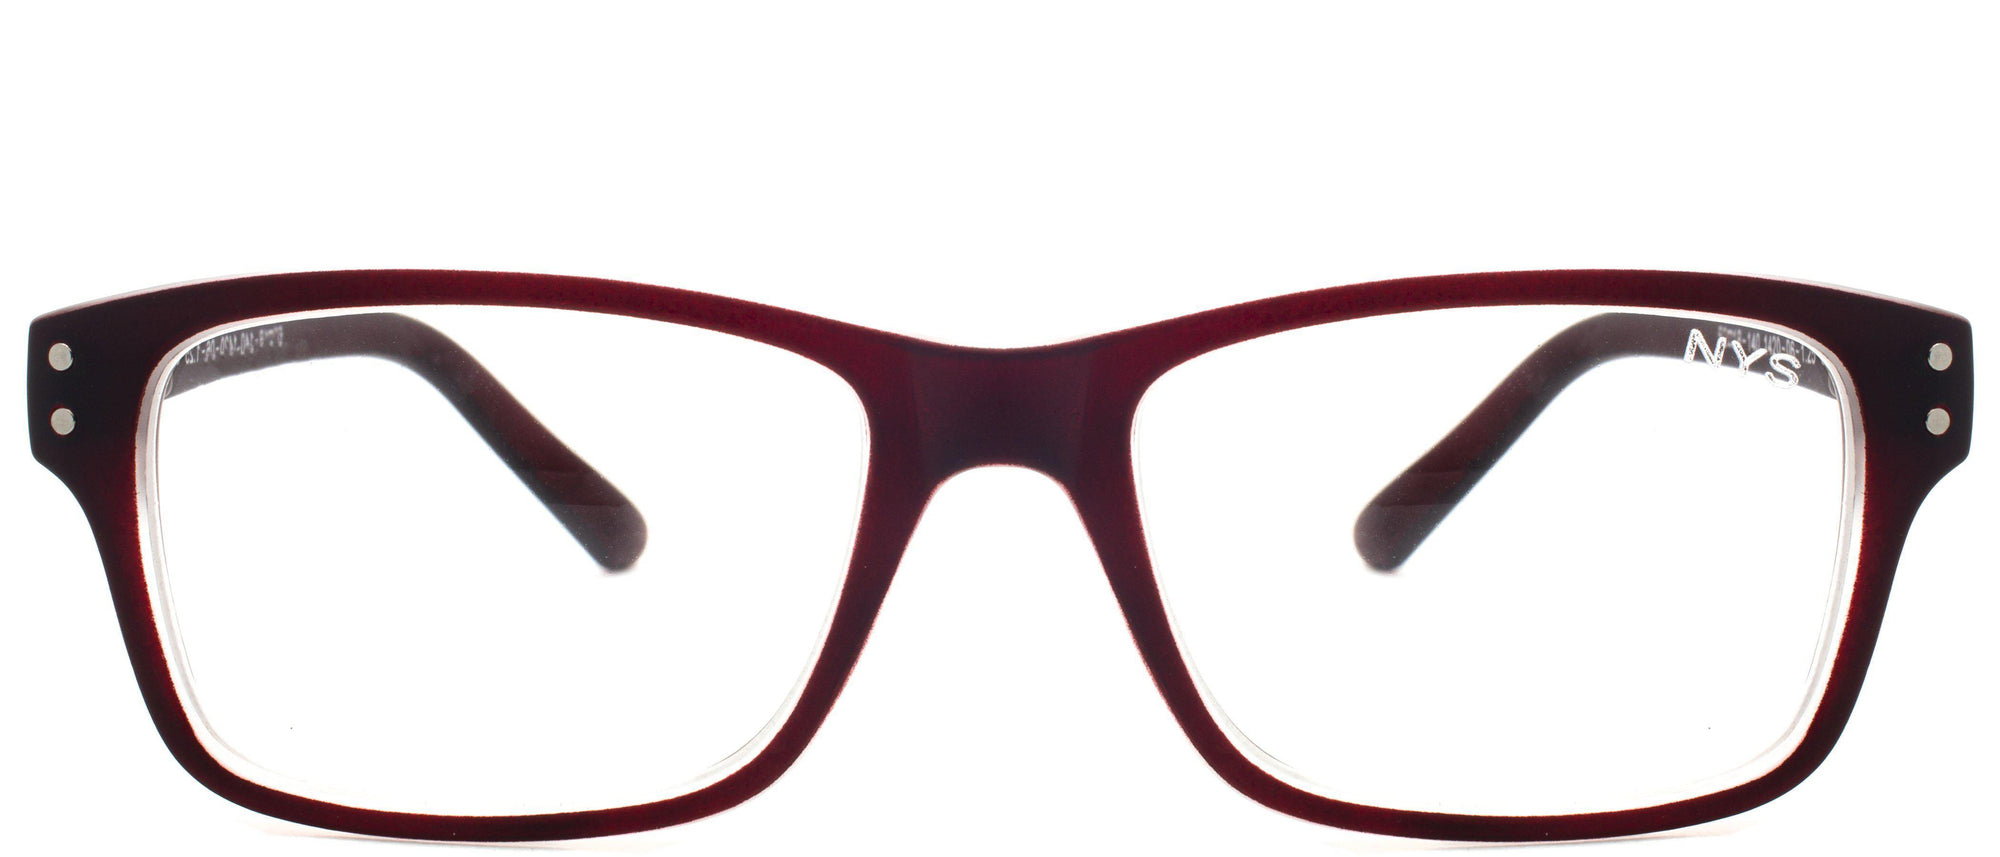 Kean Reader - Eyeglasses NYS Collection Eyewear